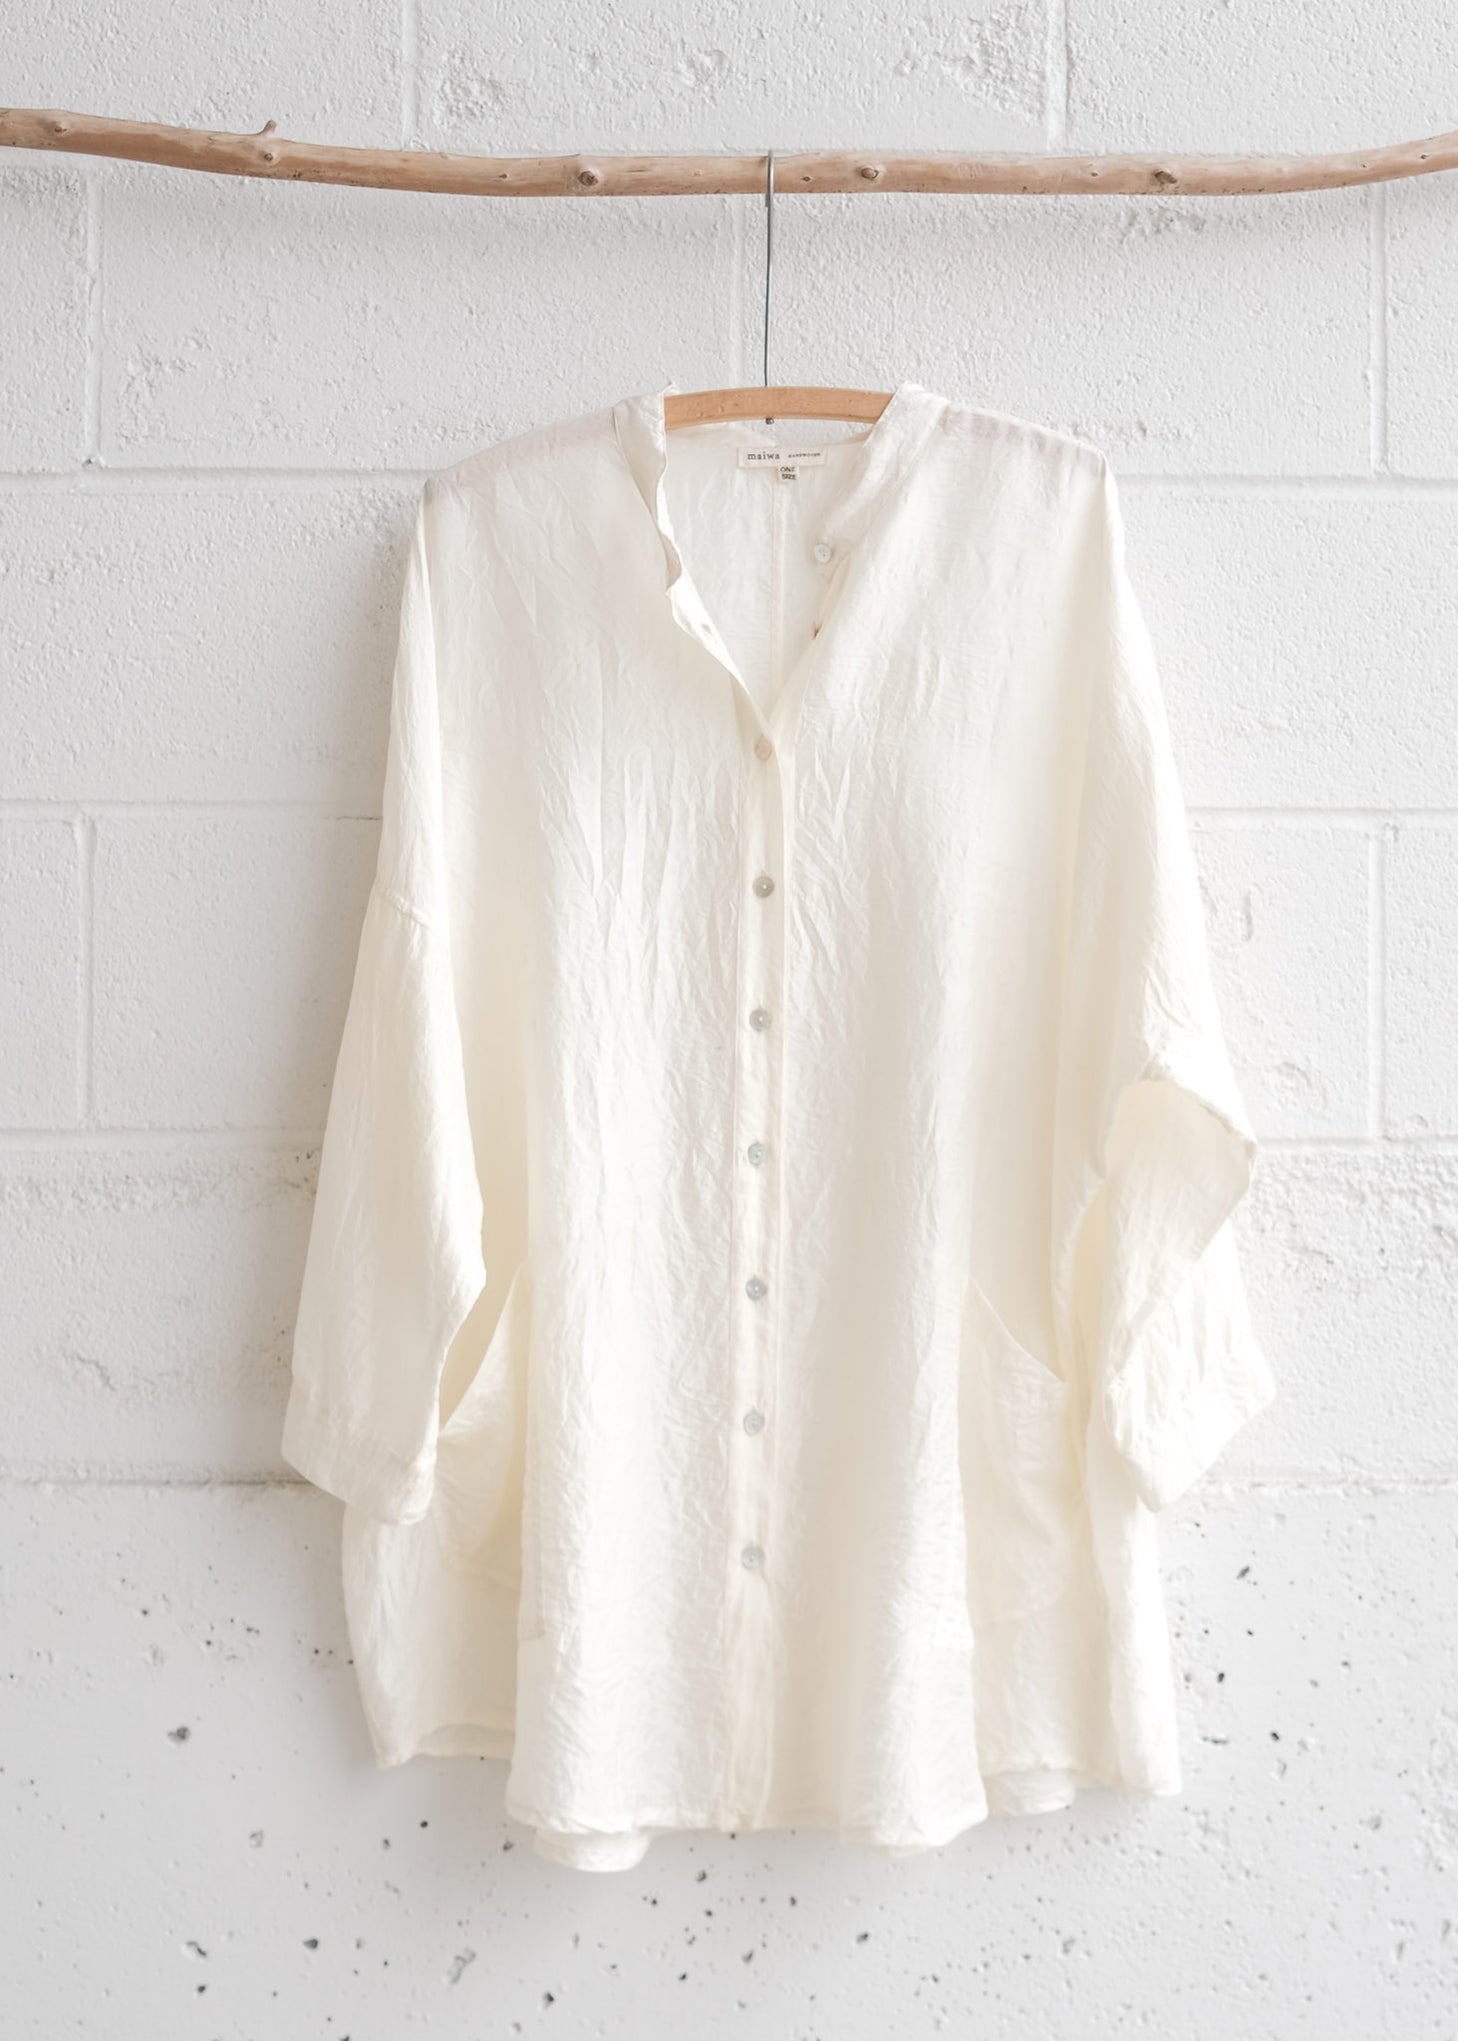 Dyeable Clothing– MAIWA